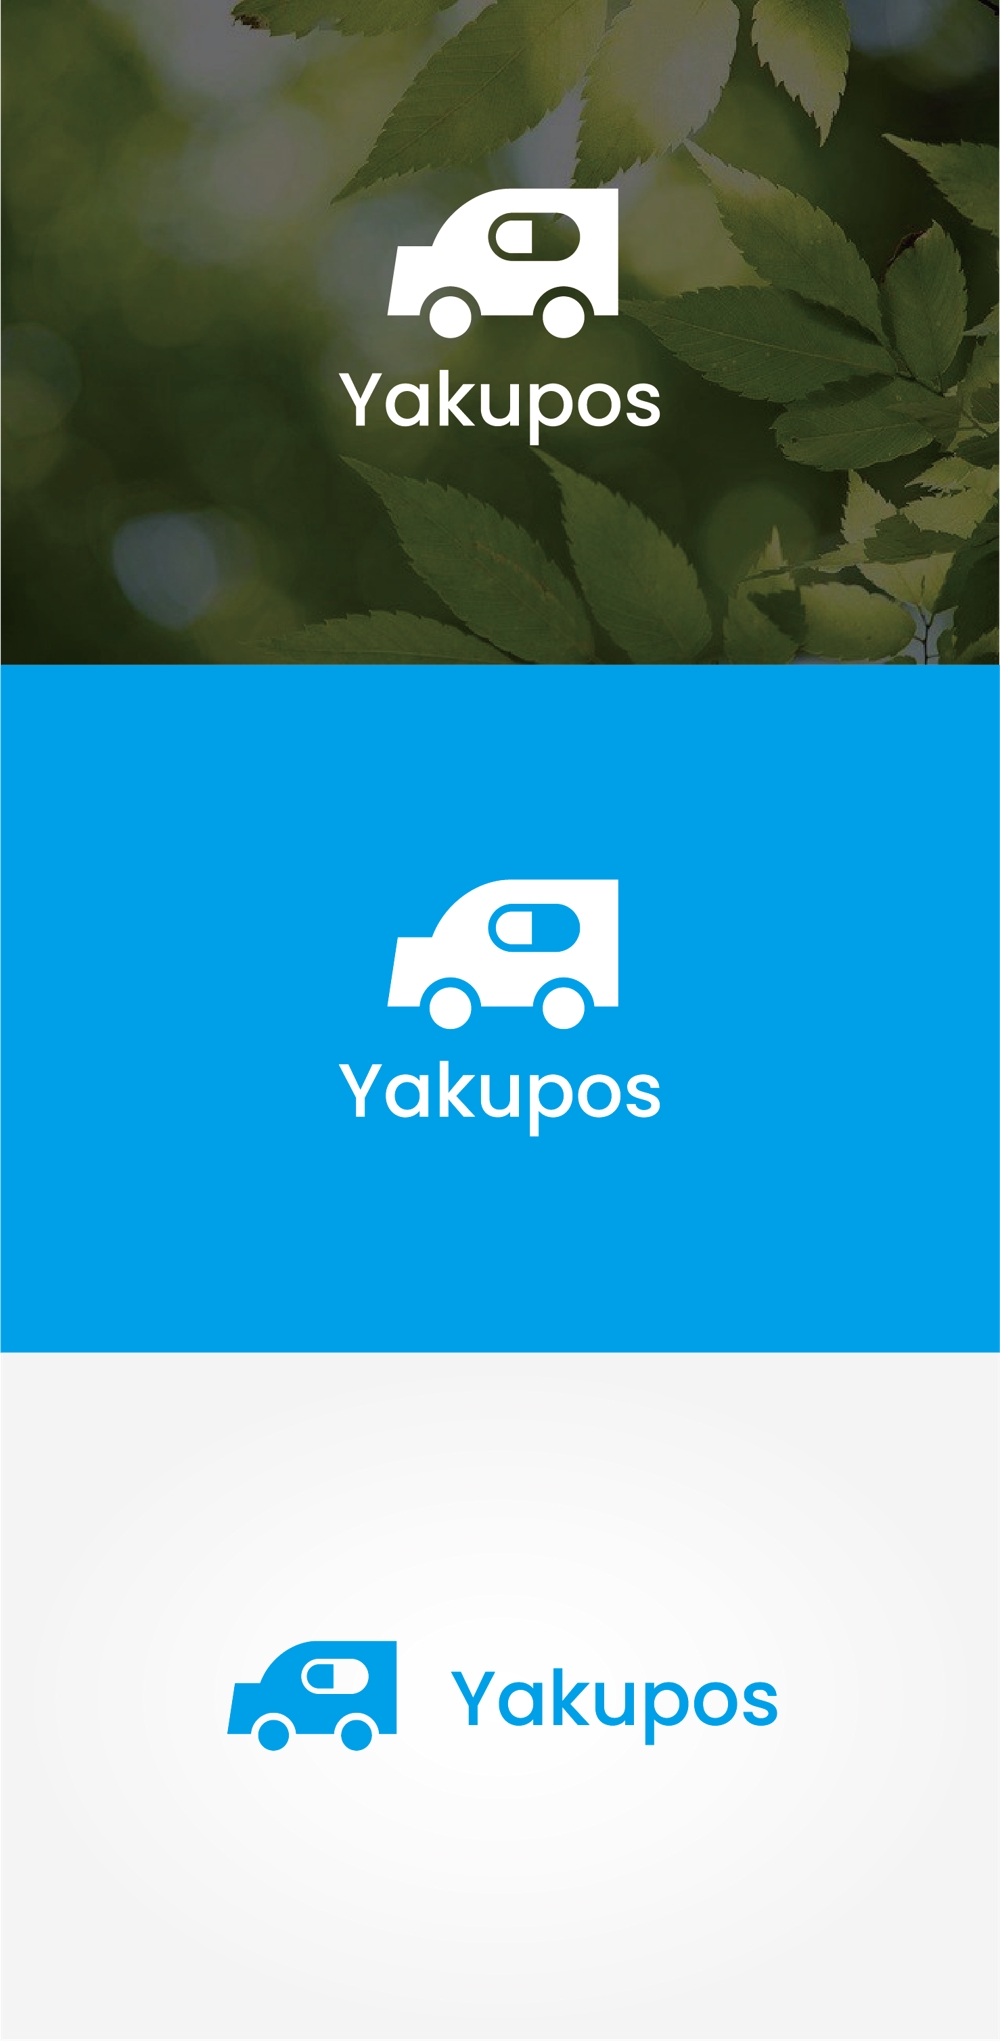 処方薬配達サービス「Yakupos」のロゴ